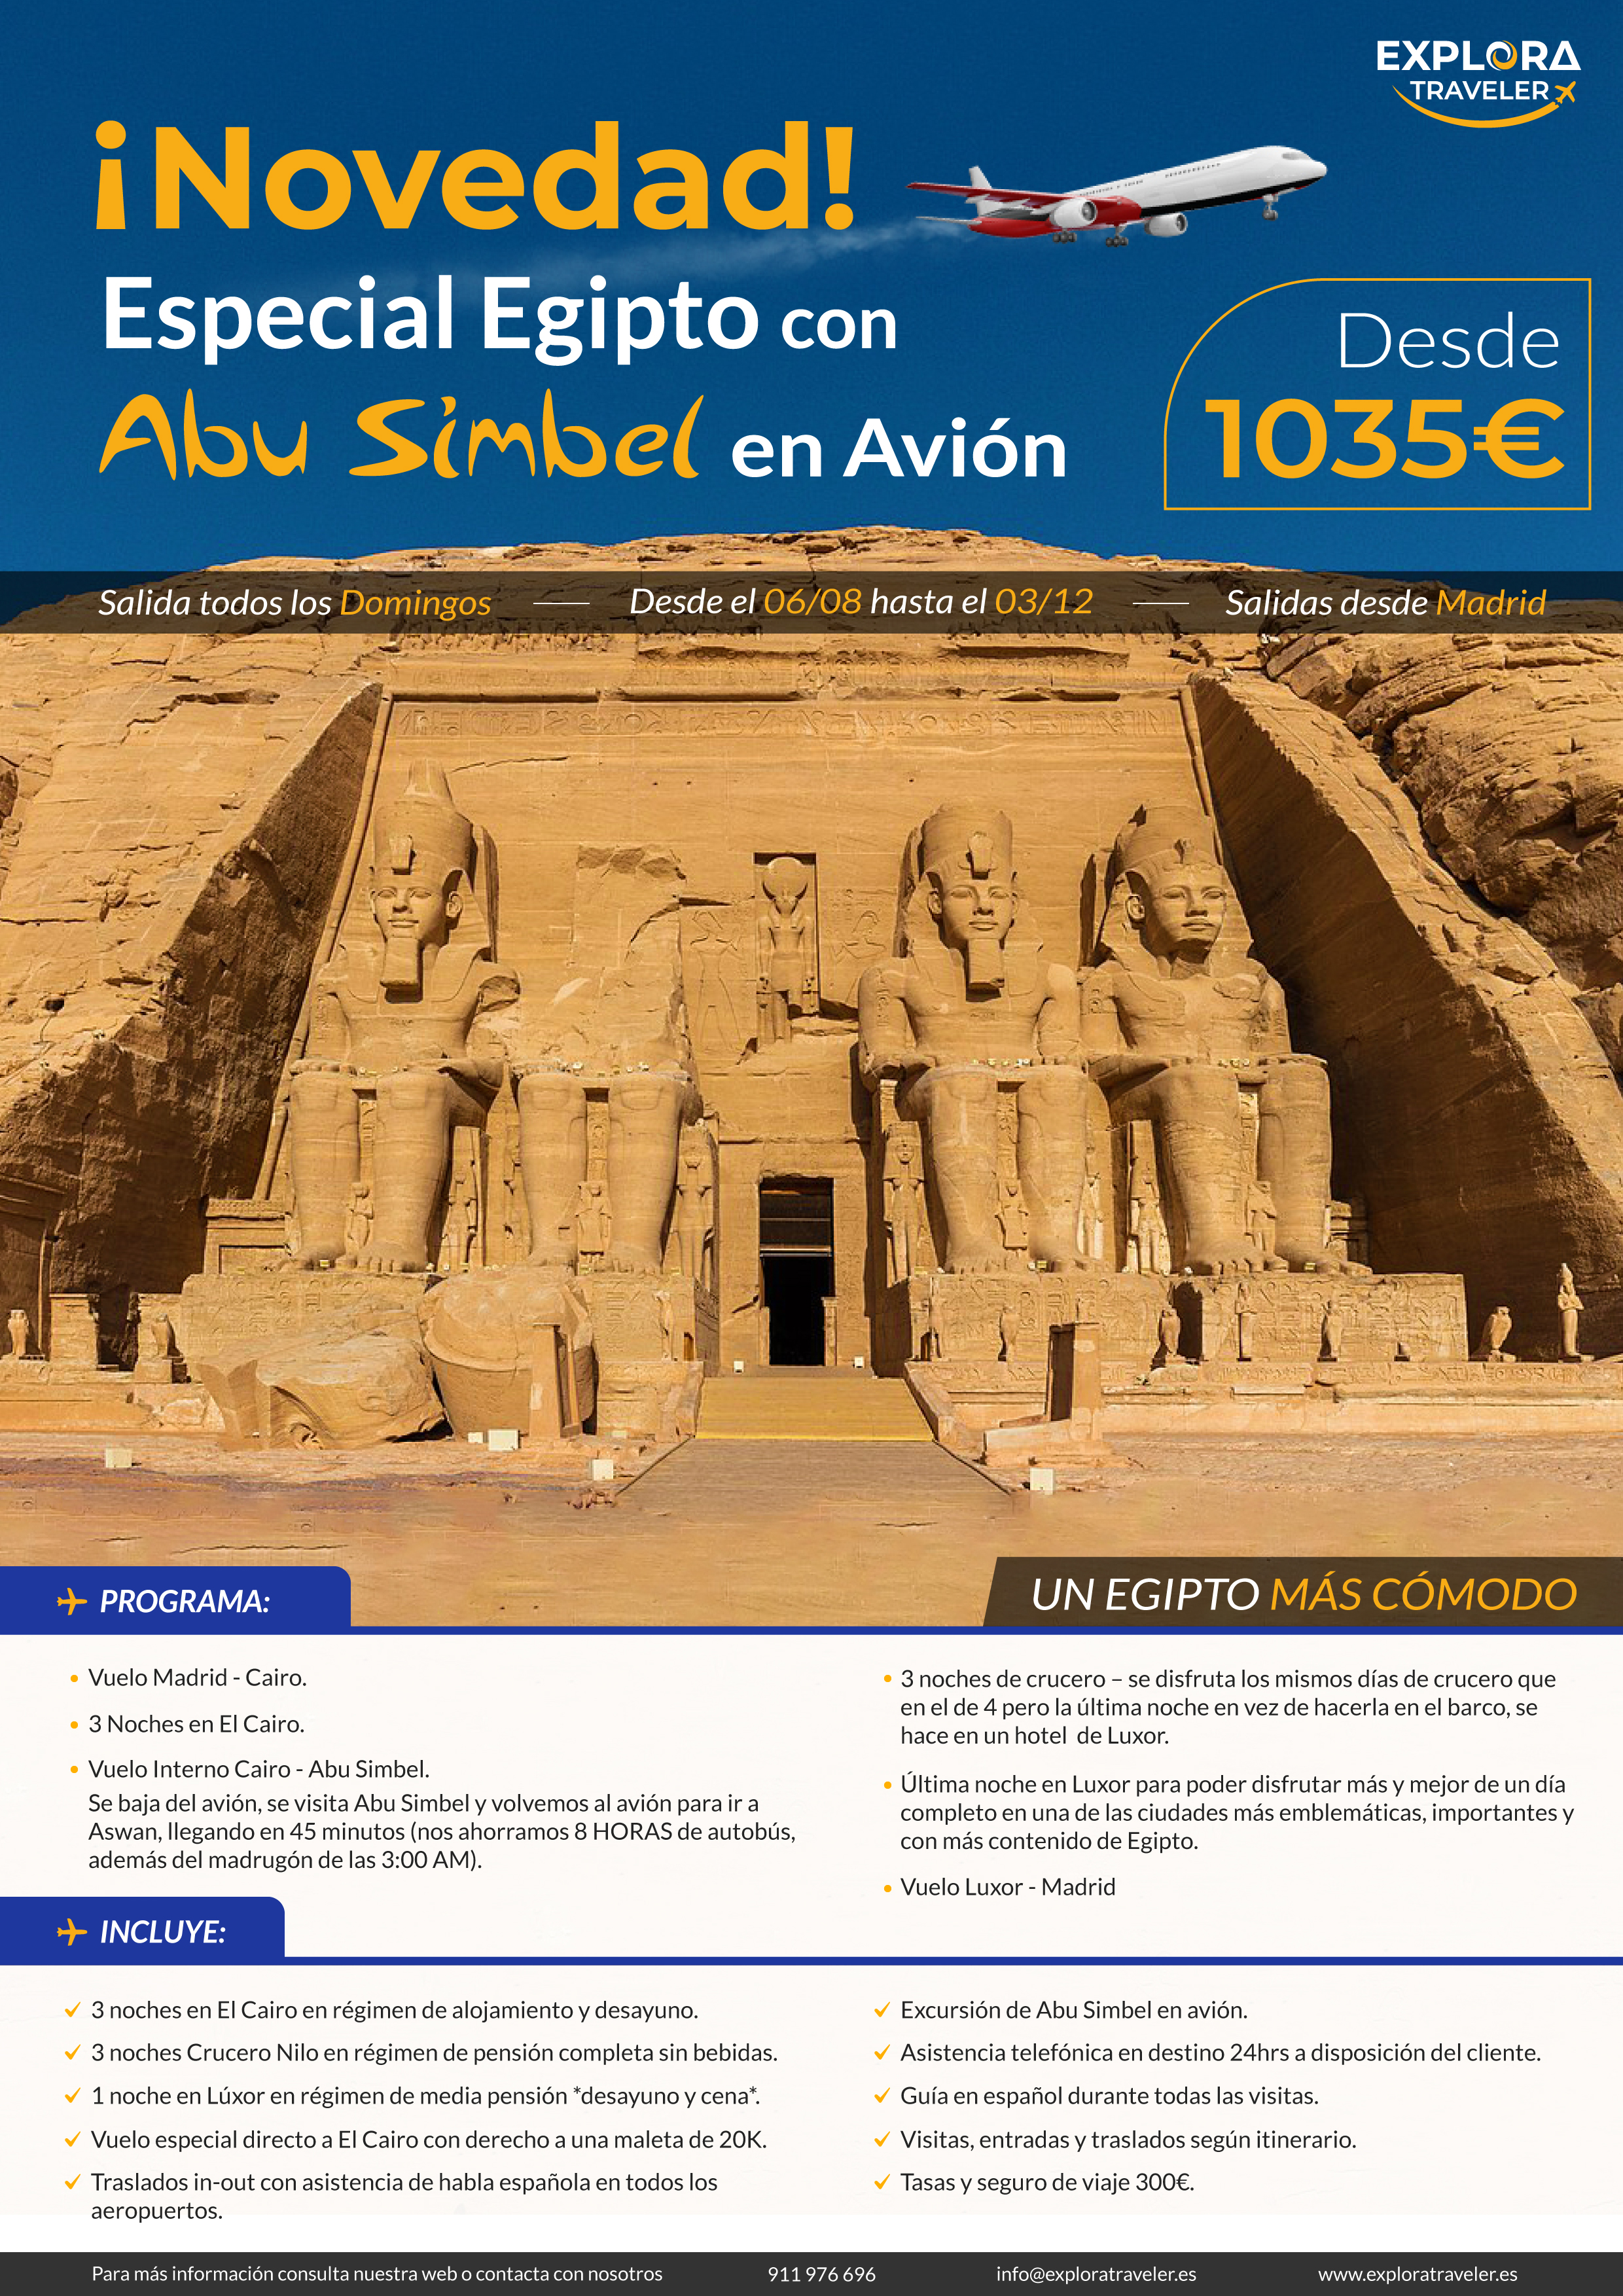 Oferta Explora Traveler Egipto Charter con Abu Simbel en avion 8 dias salidas 2023 vuelo directo desde Madrid